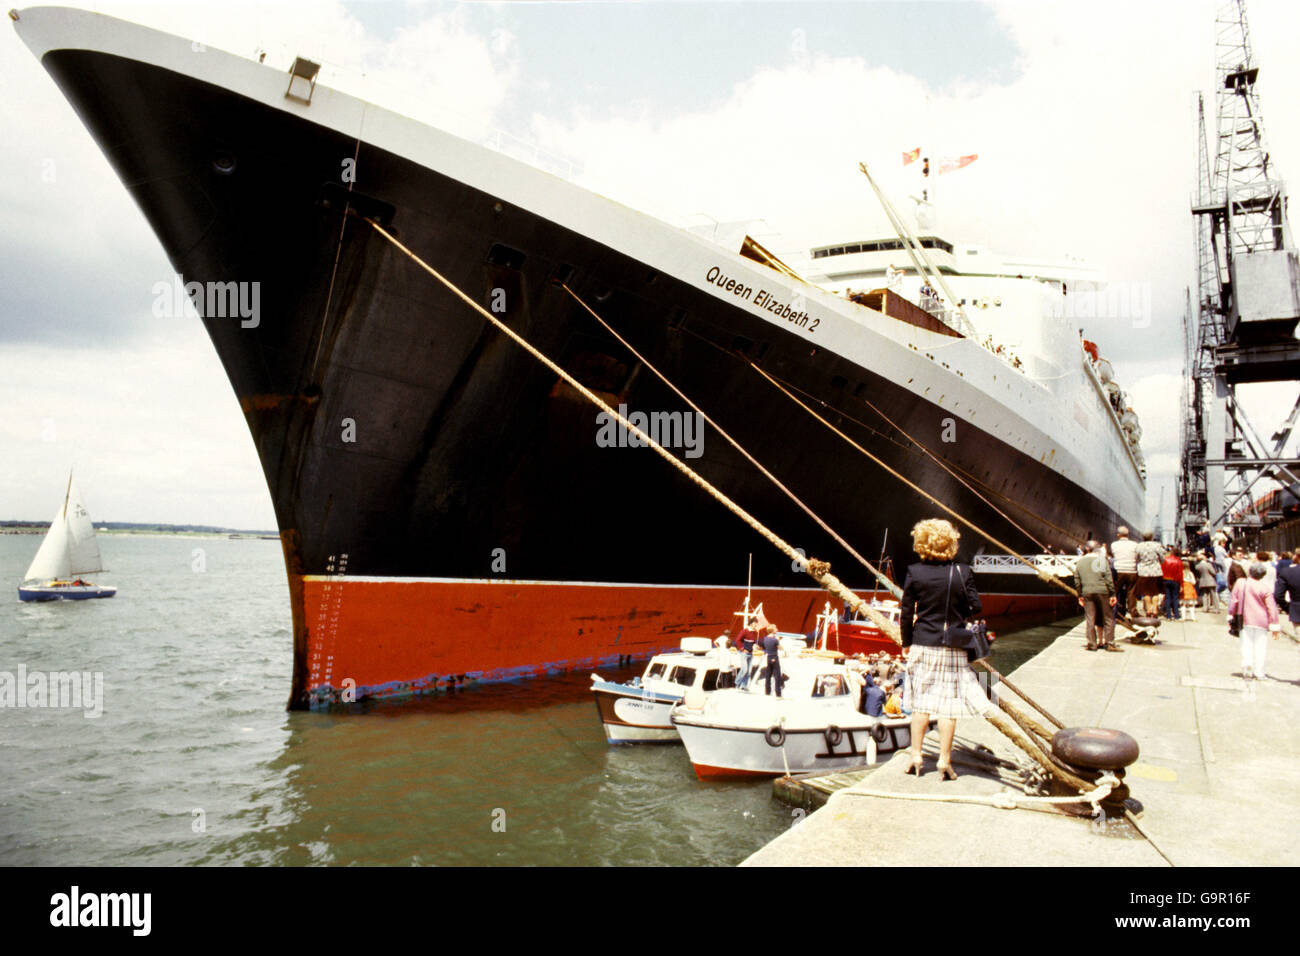 Der Cunard-Liner QE2 nach dem Andocken in Southampton mit Überlebenden von HMS Ardent, Coventry und Antelope, nachdem sie als Truppentransporter in die Falklands im Südatlantik gestritten hatte. Stockfoto